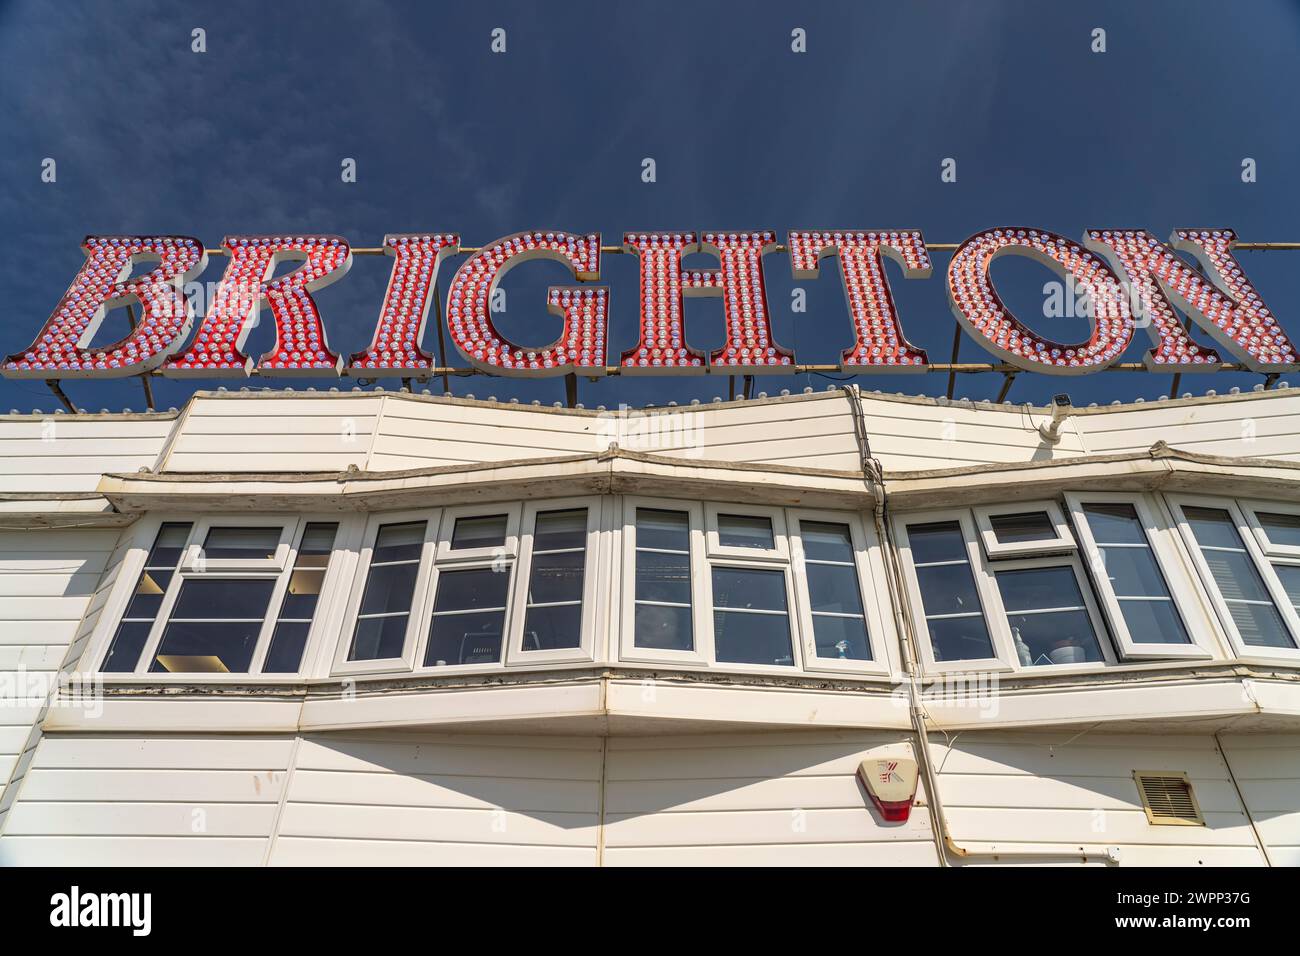 Neonschrift Brighton am Brighton Palace Pier im Badeort Brighton, England, Großbritannien, Europa Stockfoto